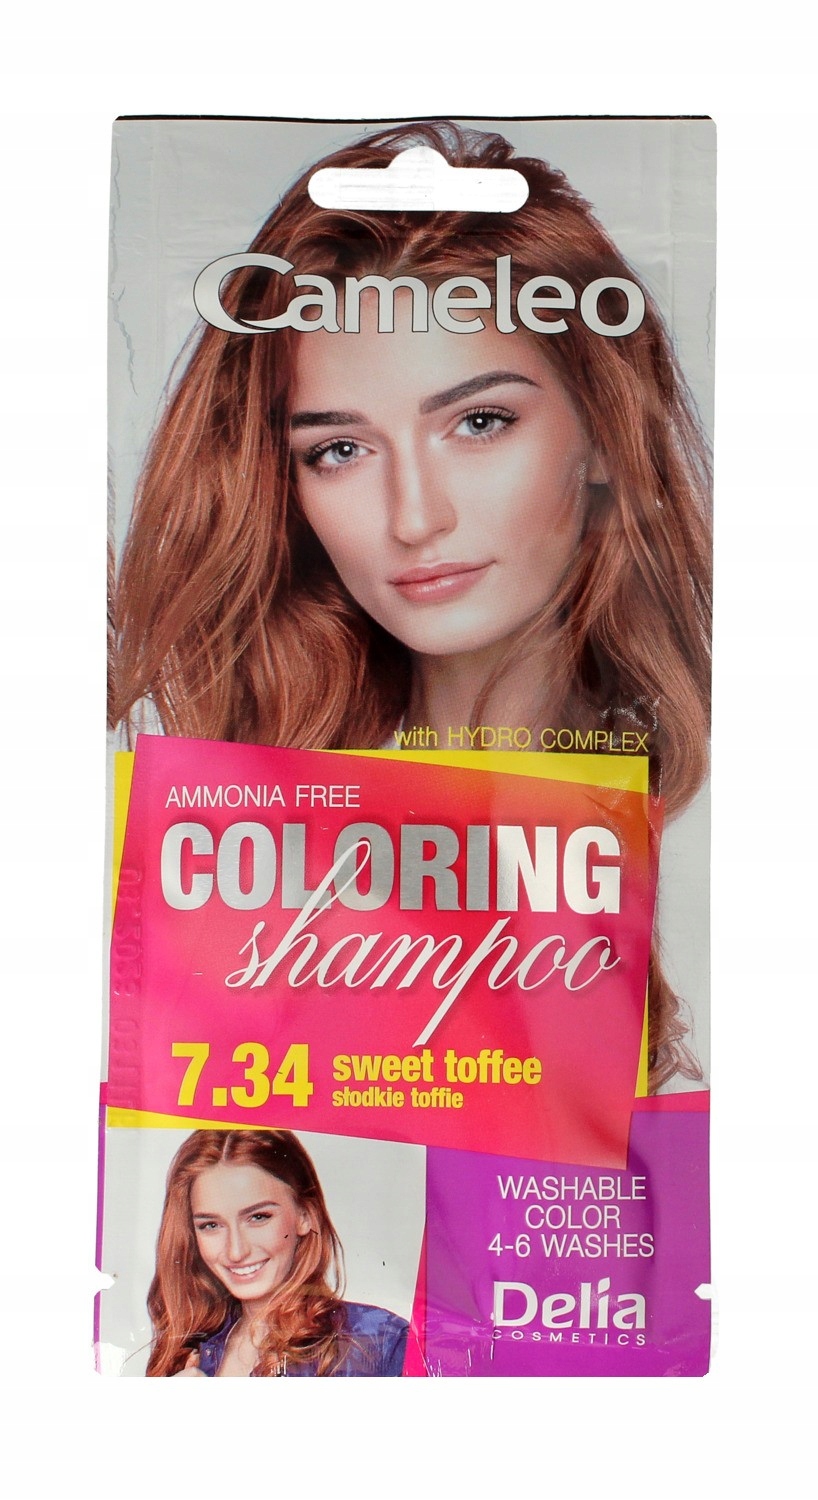 delia cameleo szampon koloryzujący sposób użycia